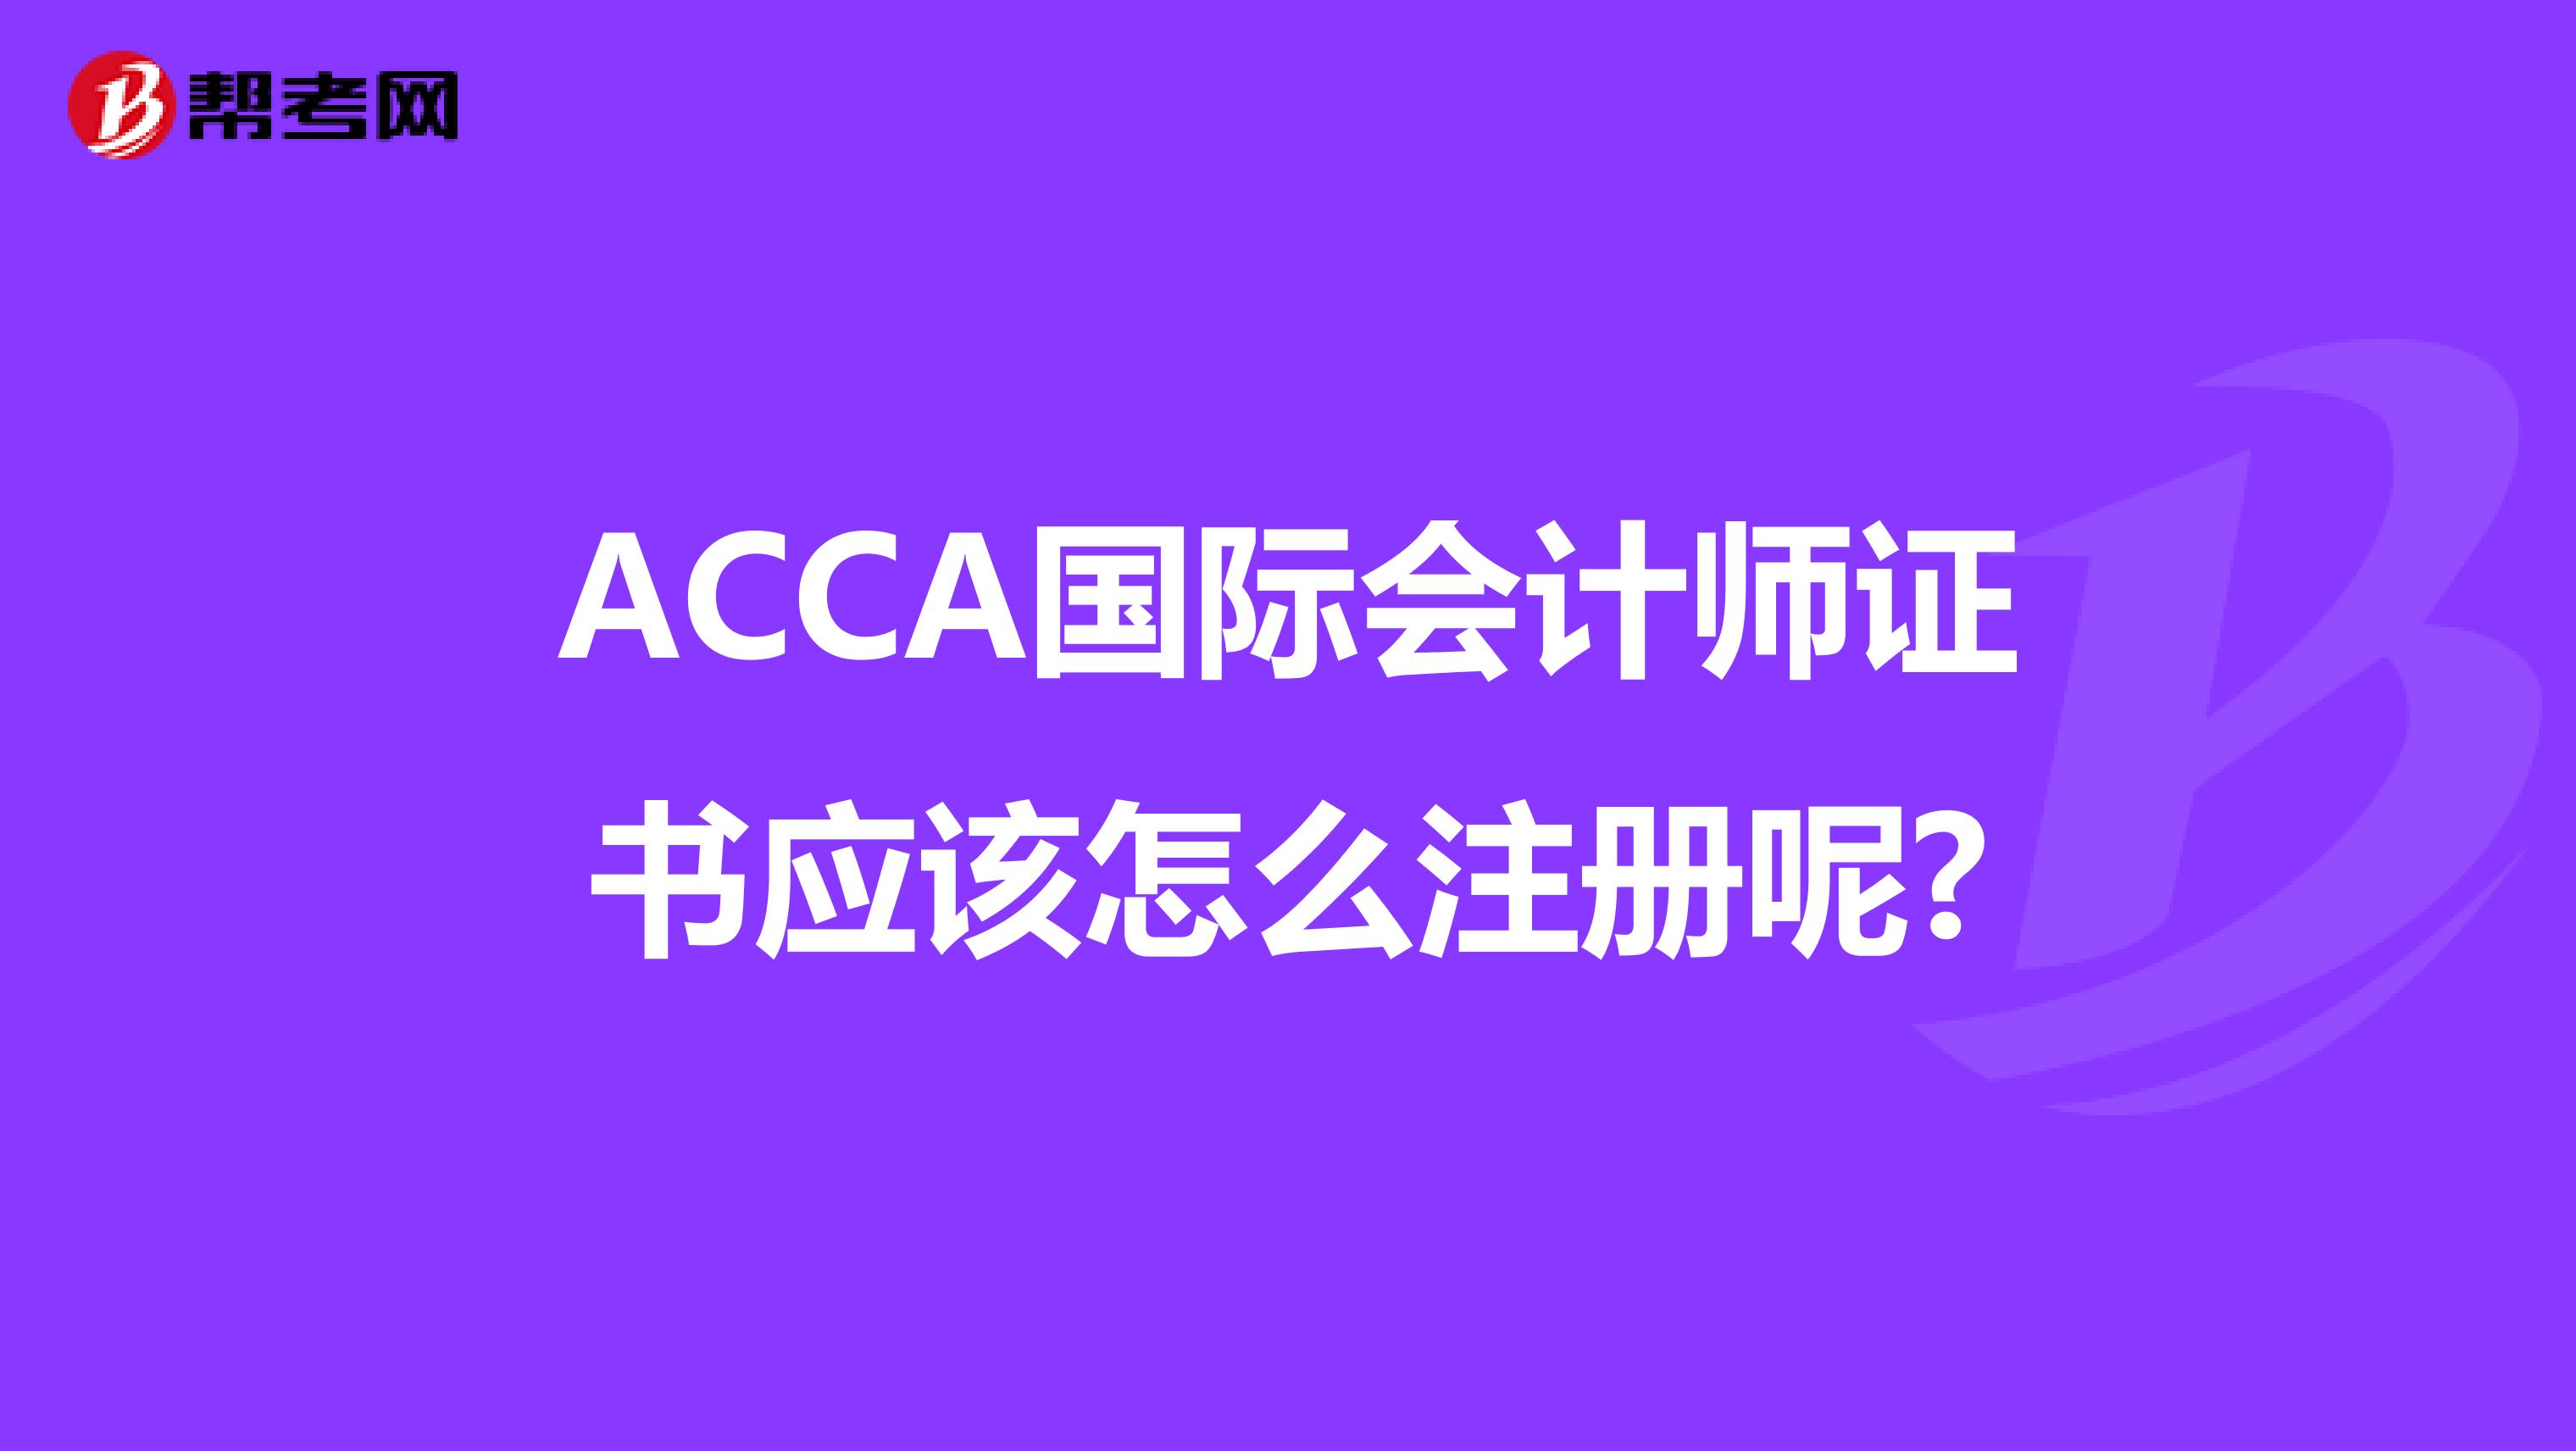 ACCA国际会计师证书应该怎么注册呢?